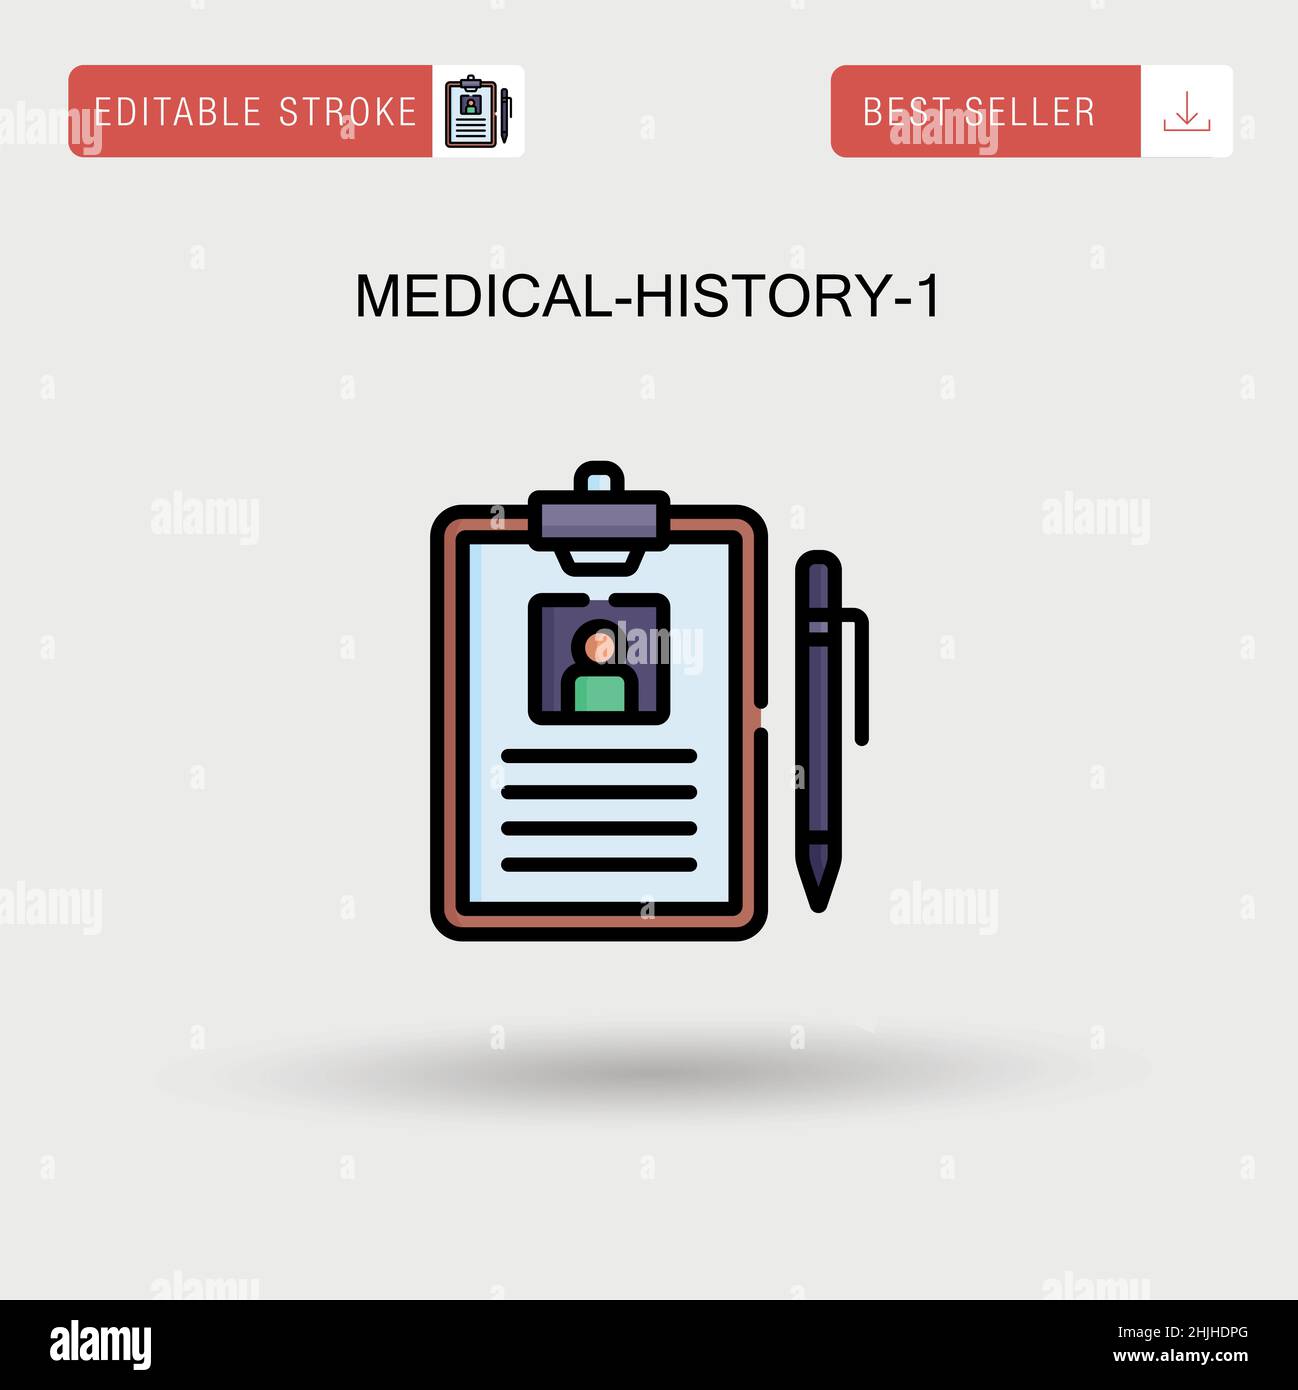 Medical-History-1 einfaches Vektorsymbol. Stock Vektor